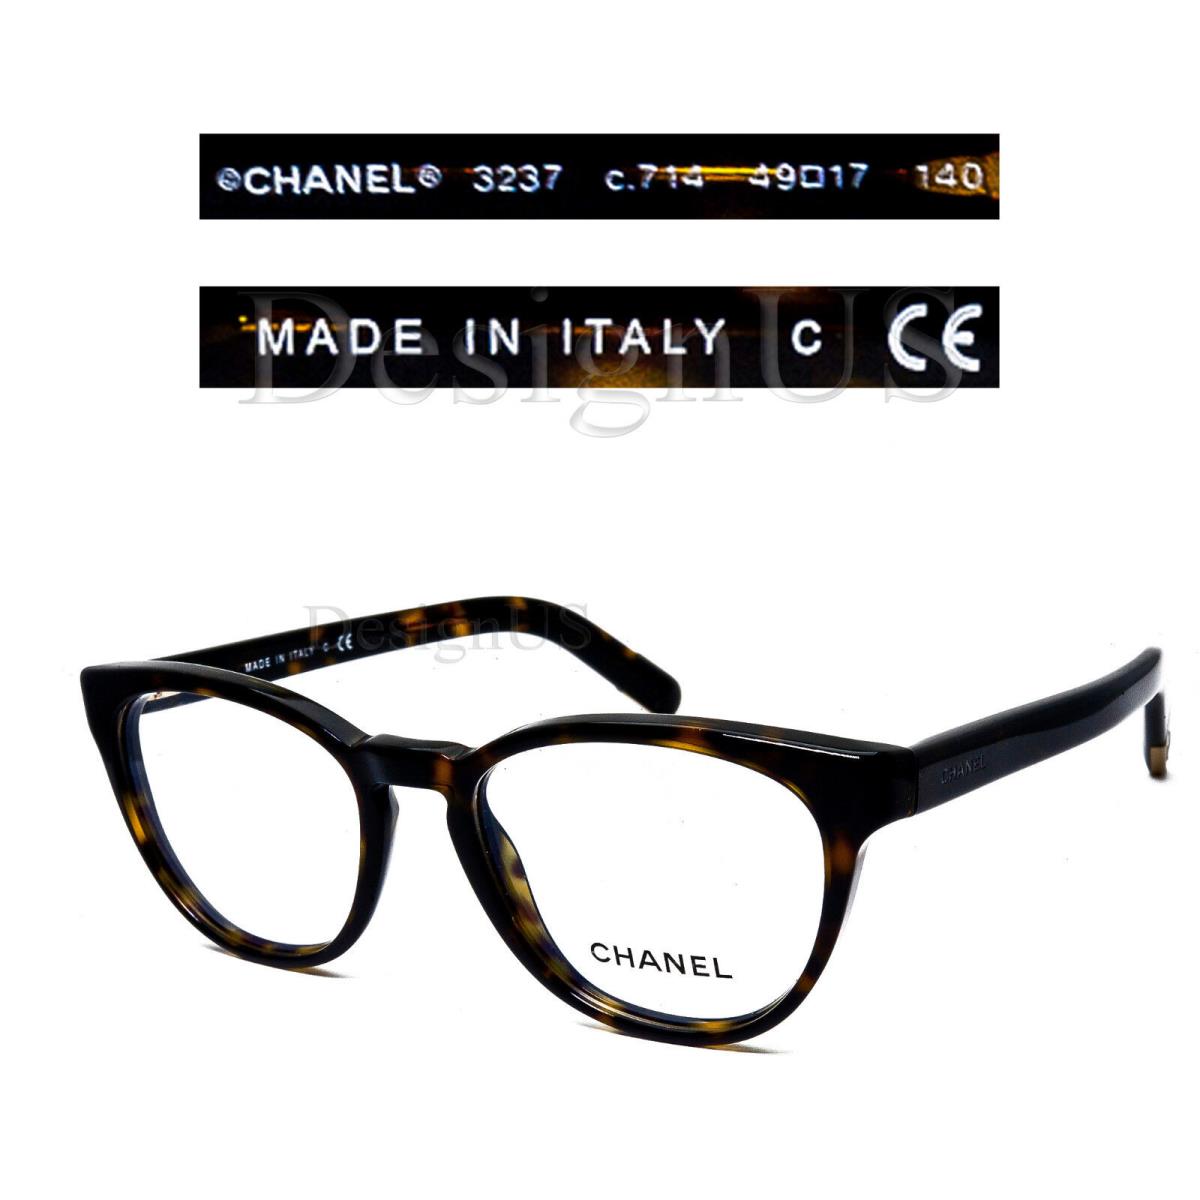 Chanel 3237 c.714 Dark Tortoise Size 49/17/140 Eyeglasses Italy